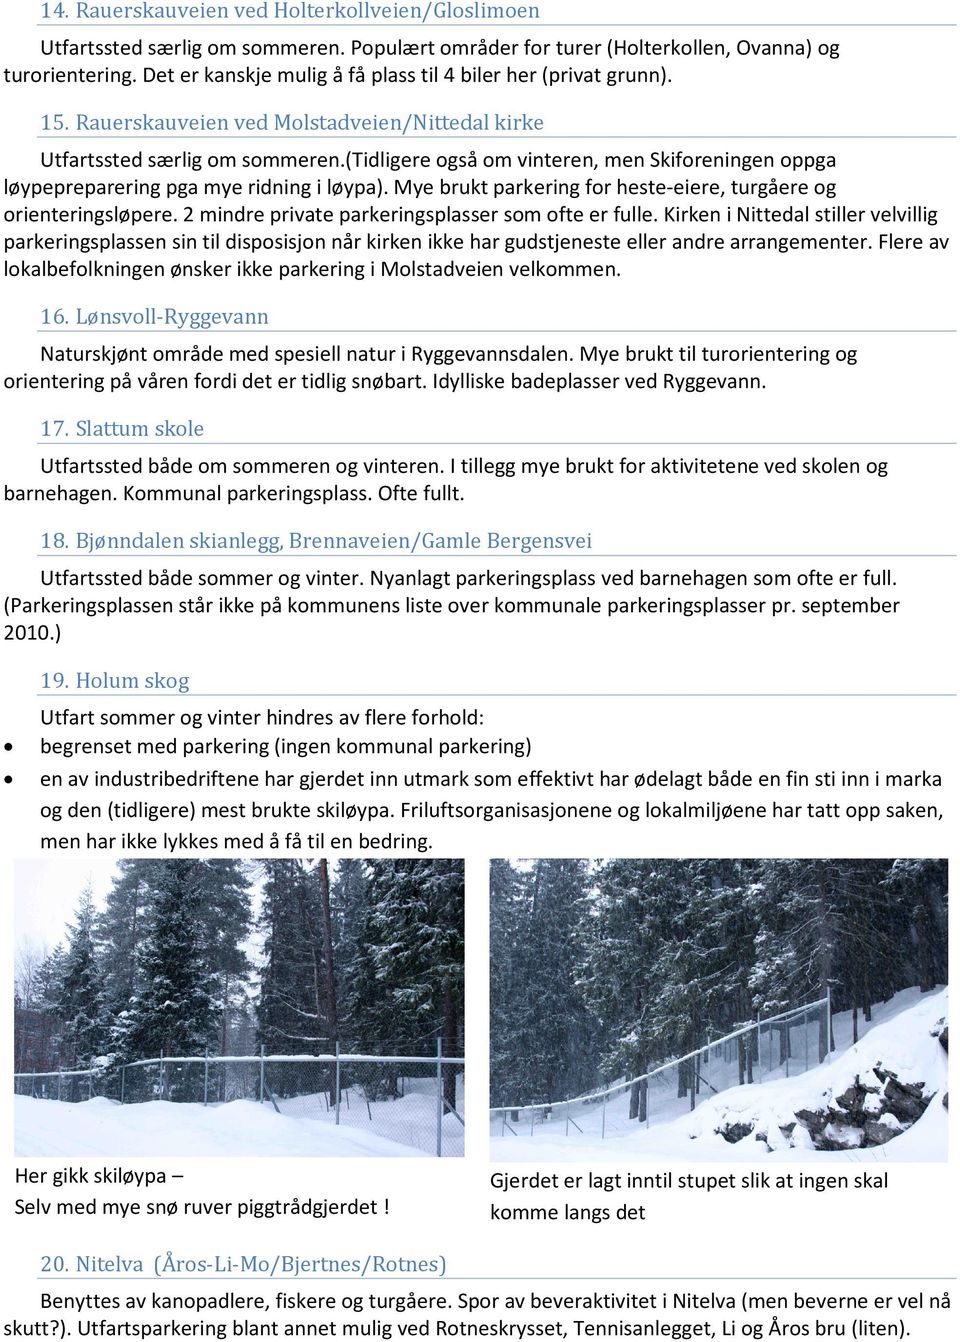 (tidligere også om vinteren, men Skiforeningen oppga løypepreparering pga mye ridning i løypa). Mye brukt parkering for heste-eiere, turgåere og orienteringsløpere.